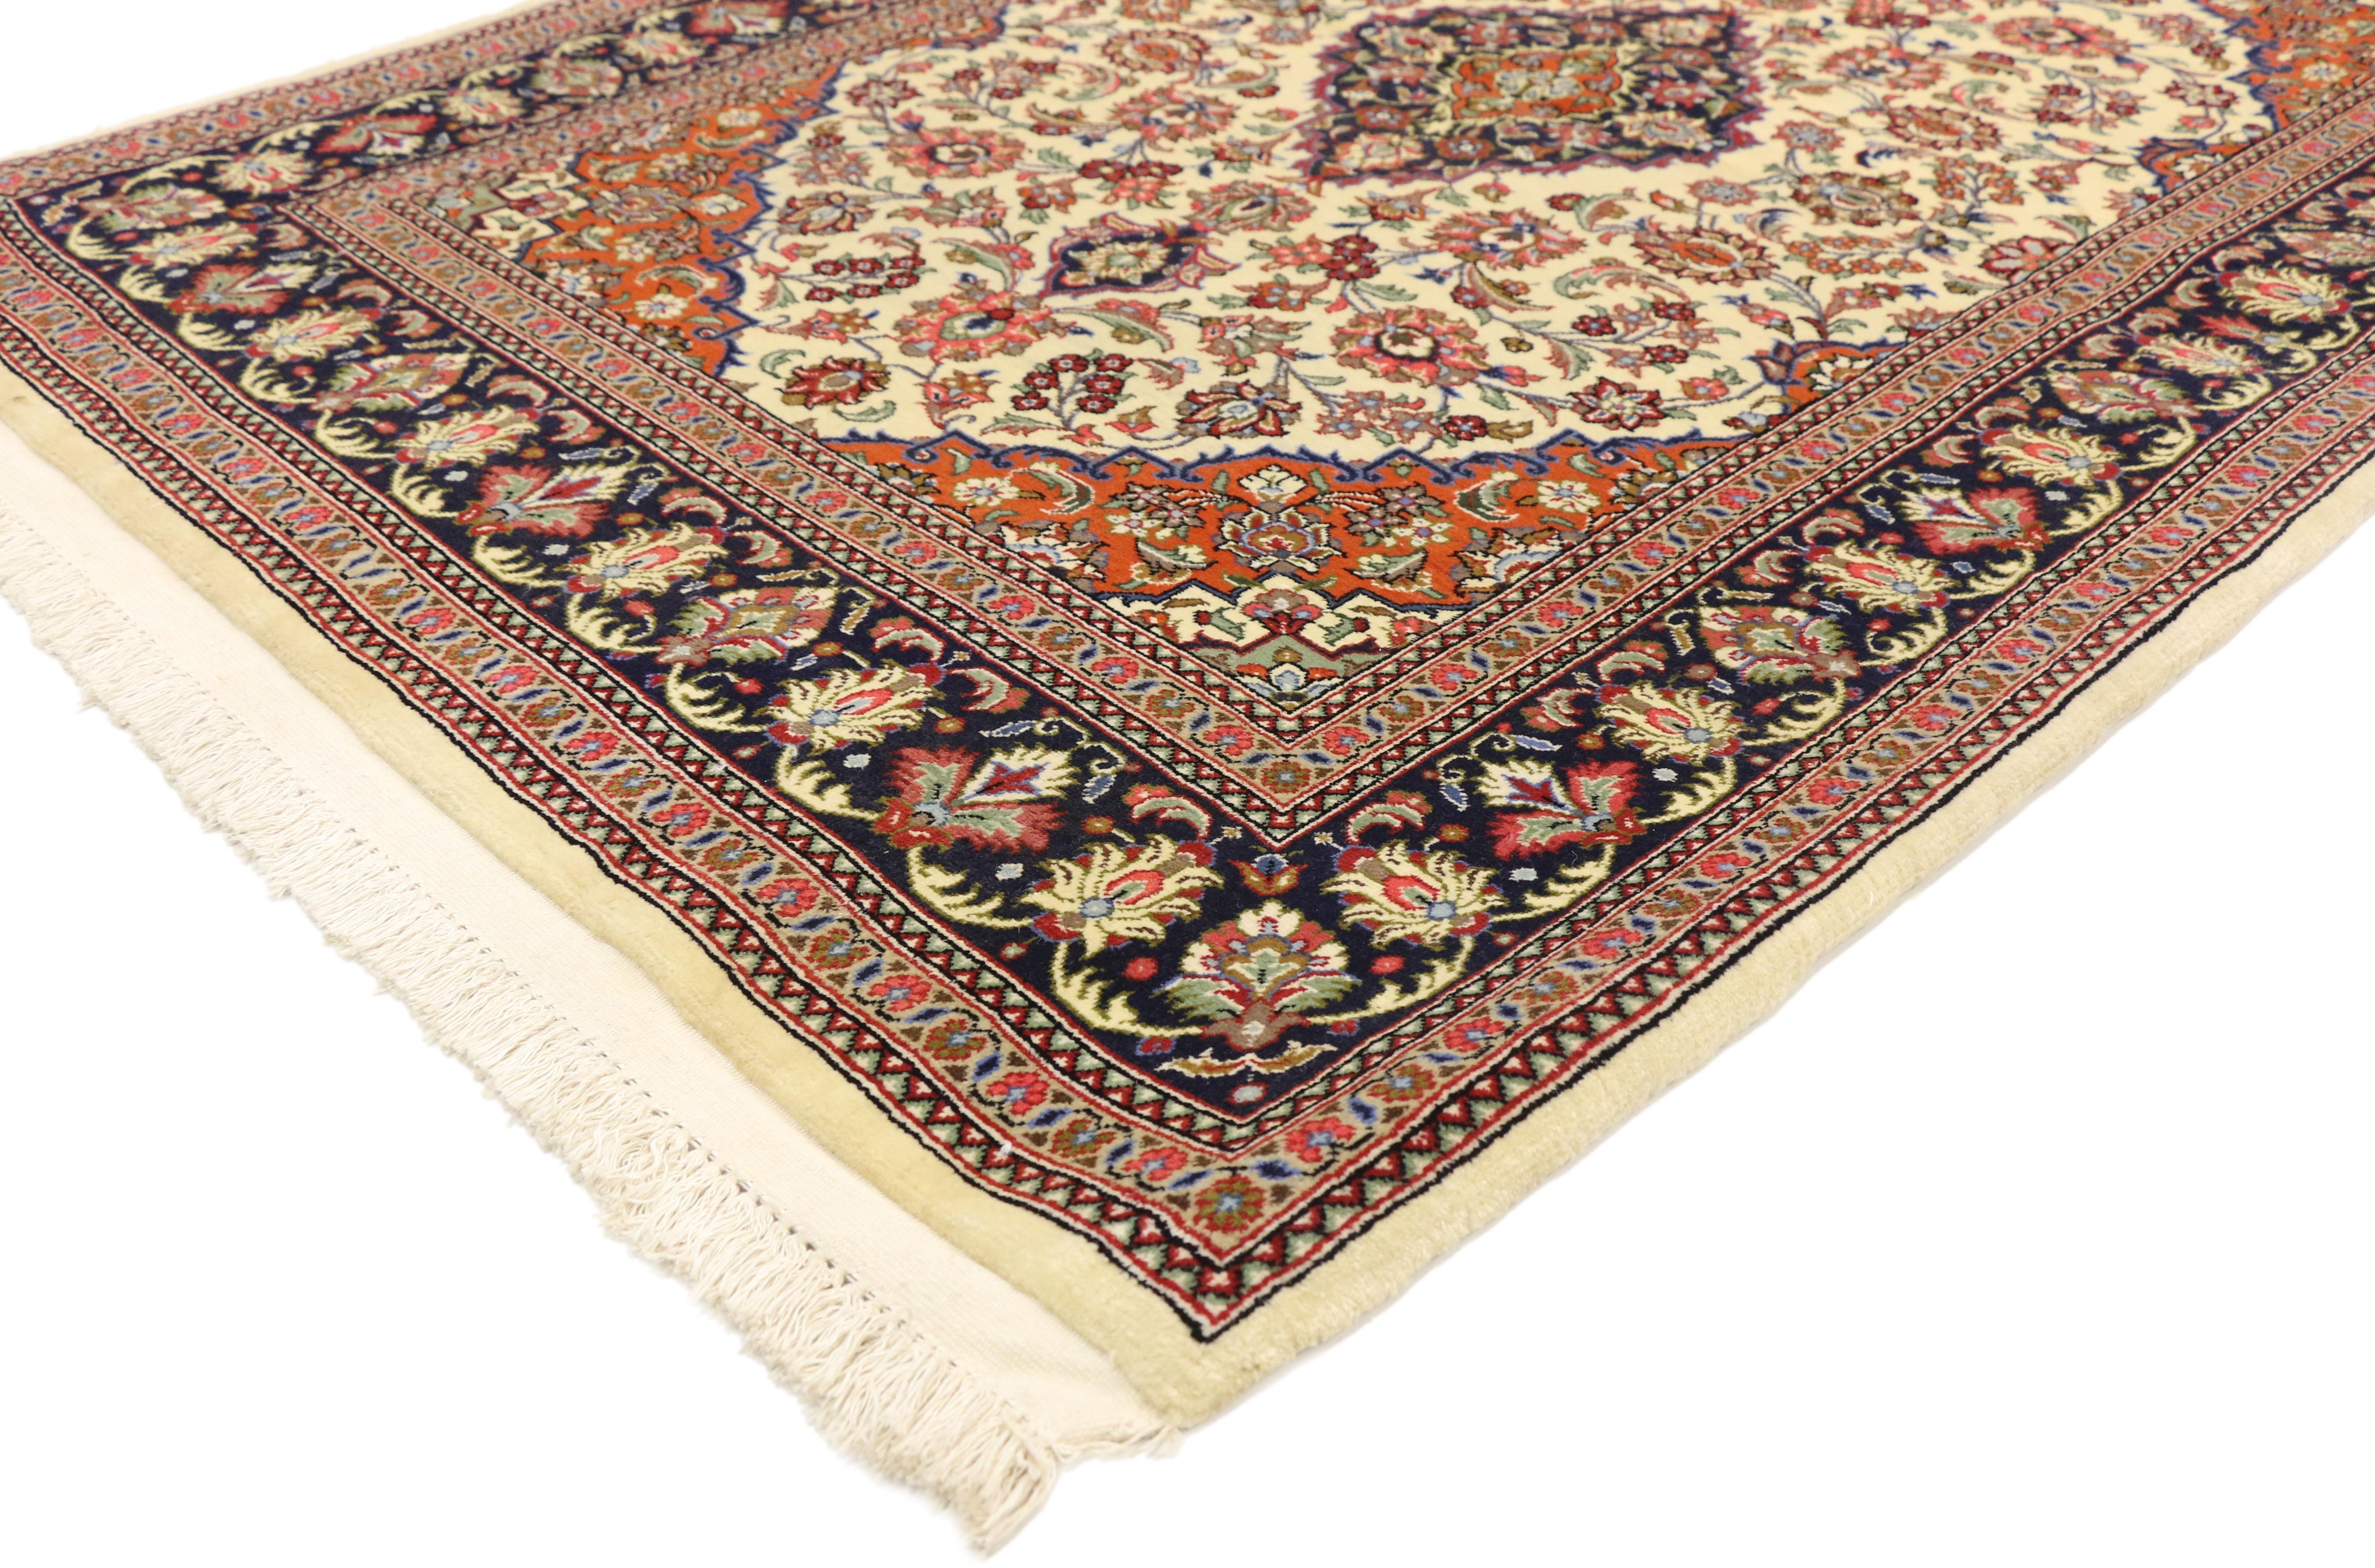 74586 Tapis de soie Qum persan vintage avec style rococo français. Ce tapis persan vintage en soie de Qum de style traditionnel présente un médaillon central et des écoinçons élaborés avec un motif all-over entouré d'une bordure classique créant un